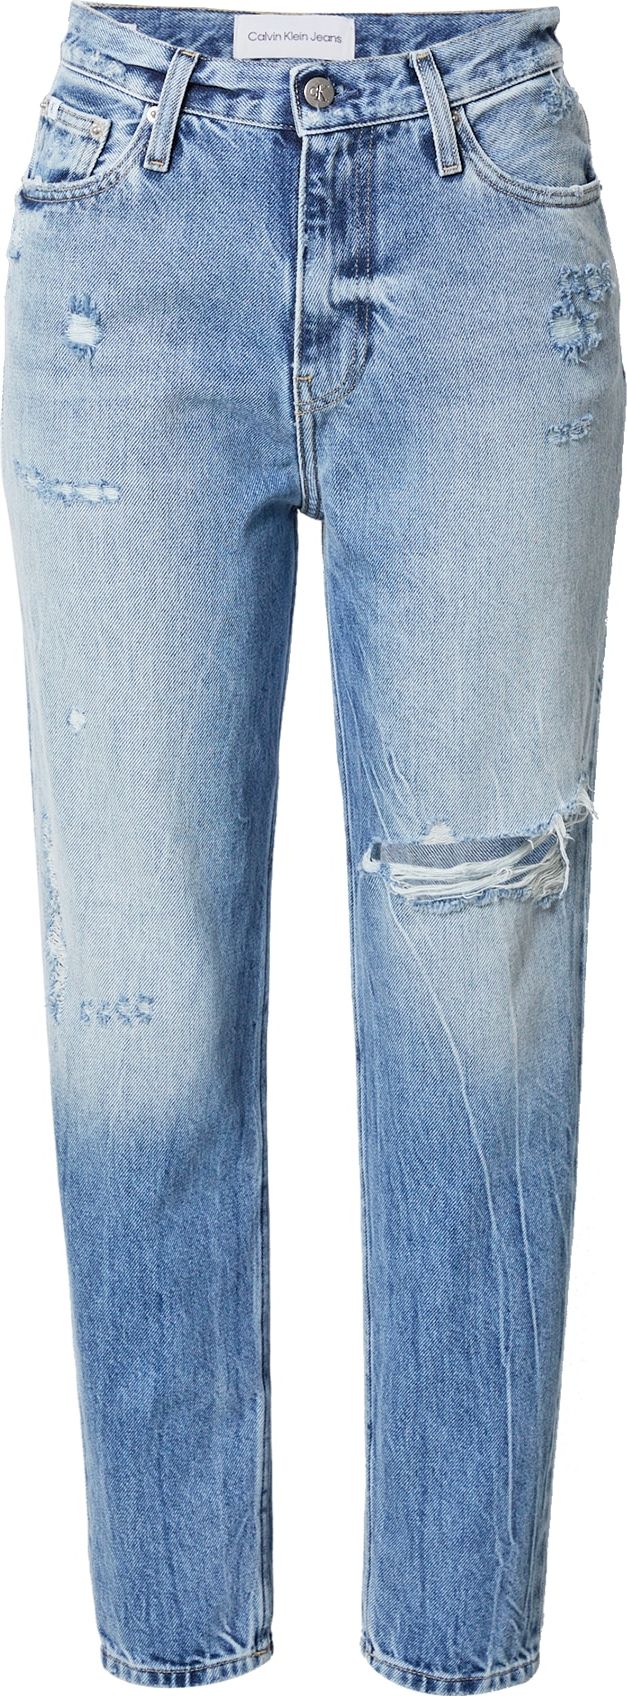 Calvin Klein Jeans Džíny 'JEAN' modrá džínovina